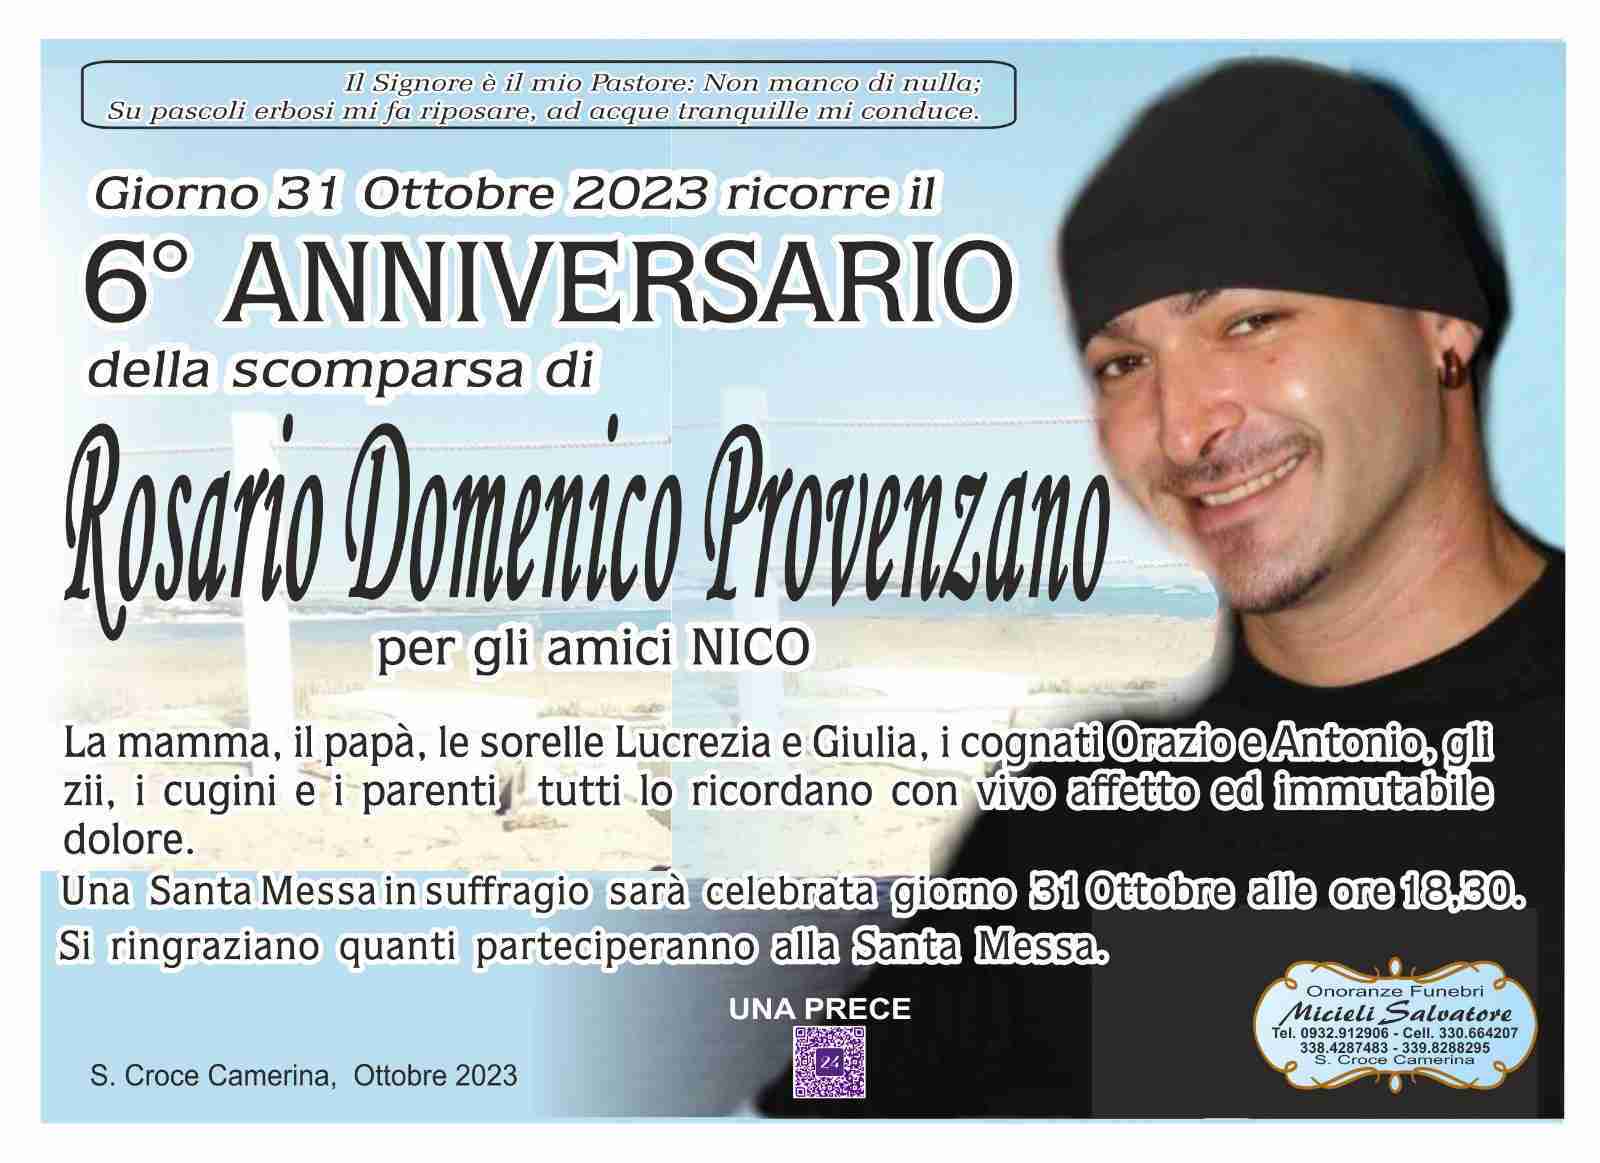 Domenico Provenzano